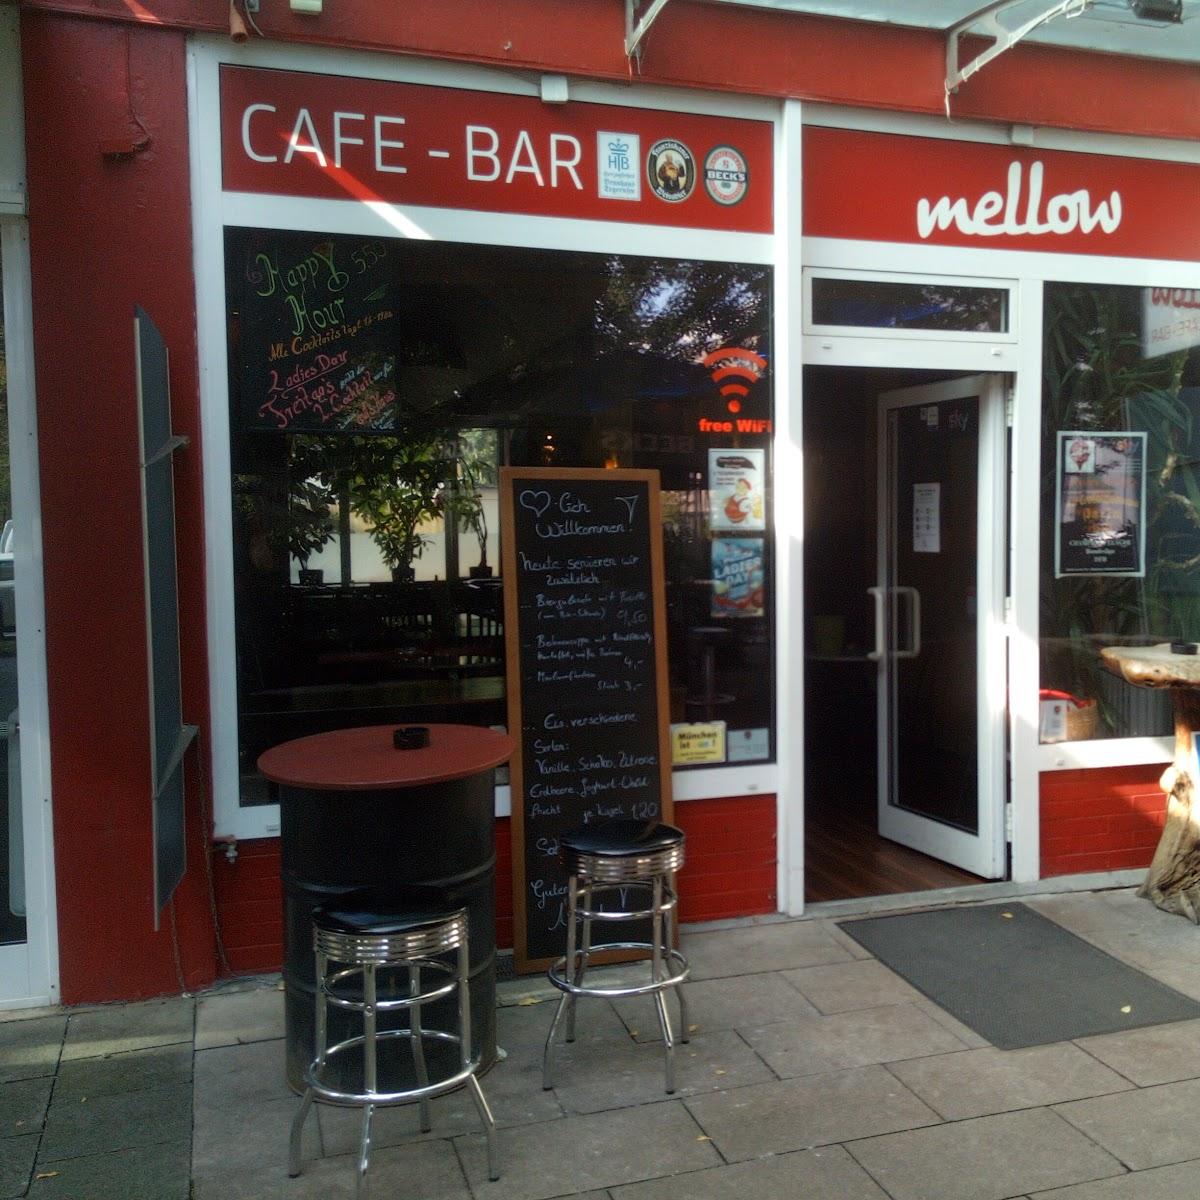 Restaurant "Cafe Bar Mellow" in München